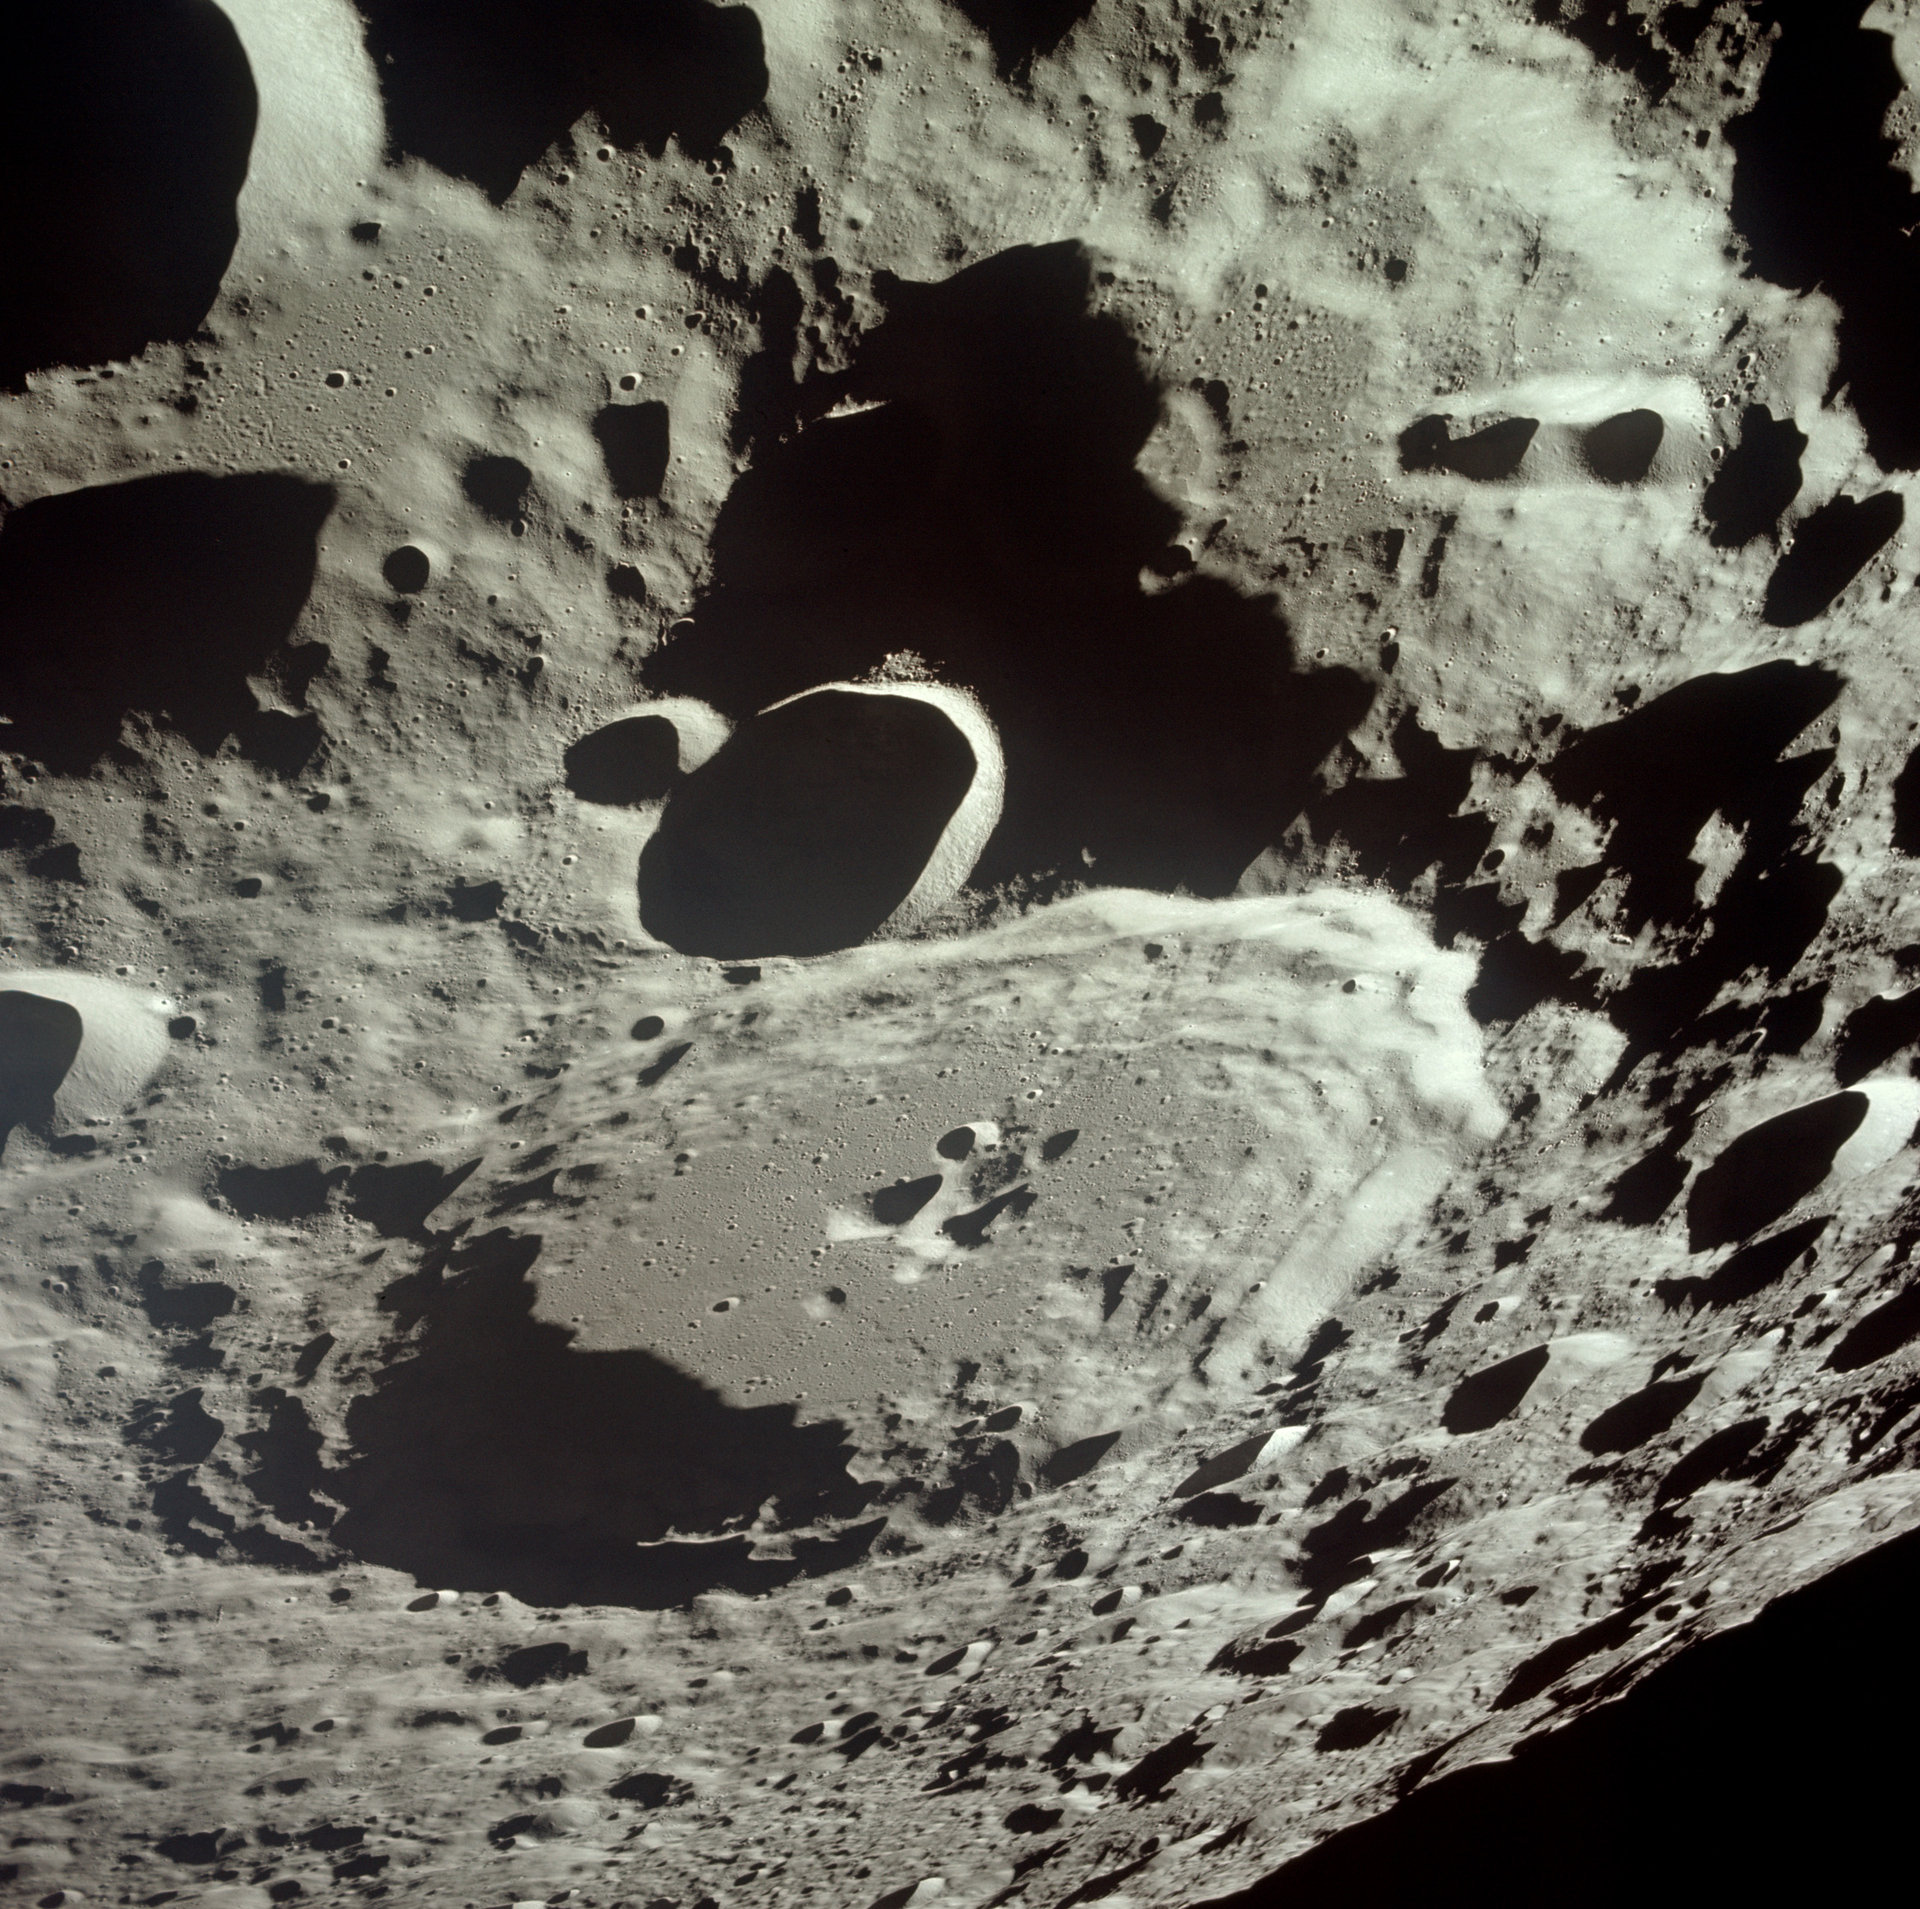 фото со спутника луны в реальном времени